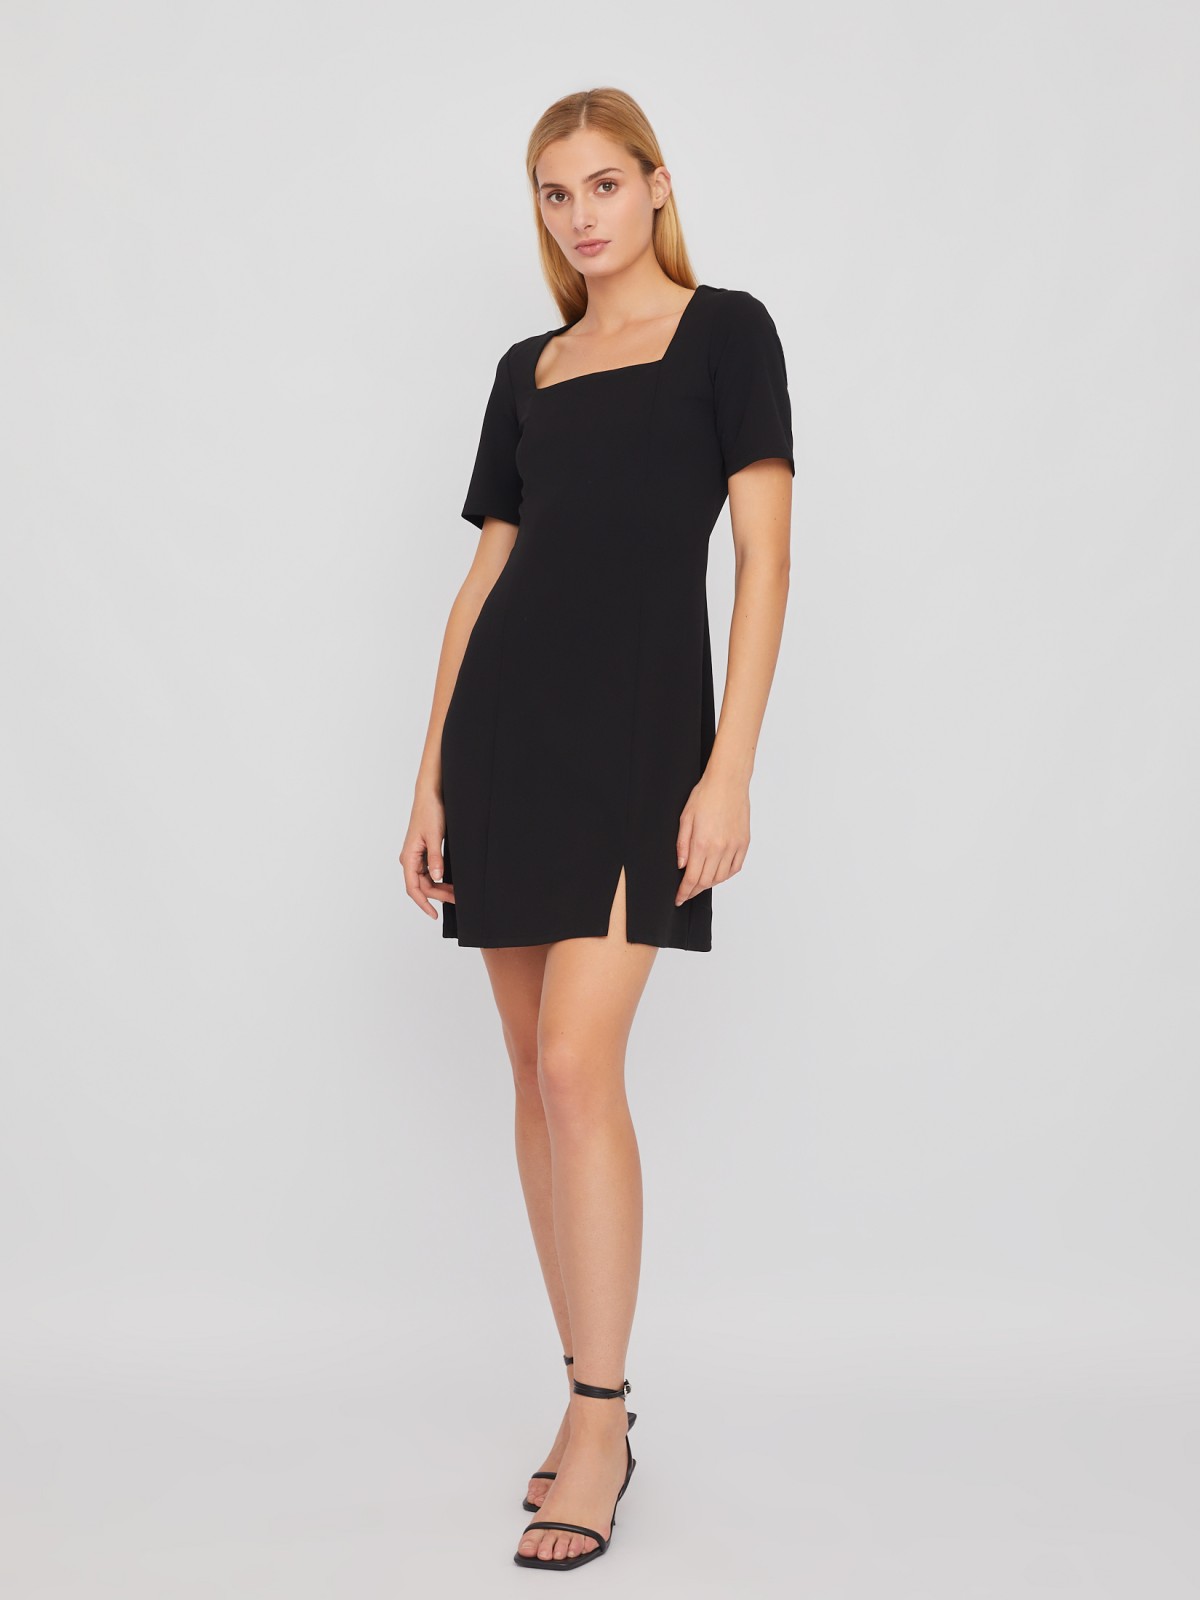 Платье длины мини с вырезом и коротким рукавом zolla 02411819F331, цвет черный, размер XS - фото 2